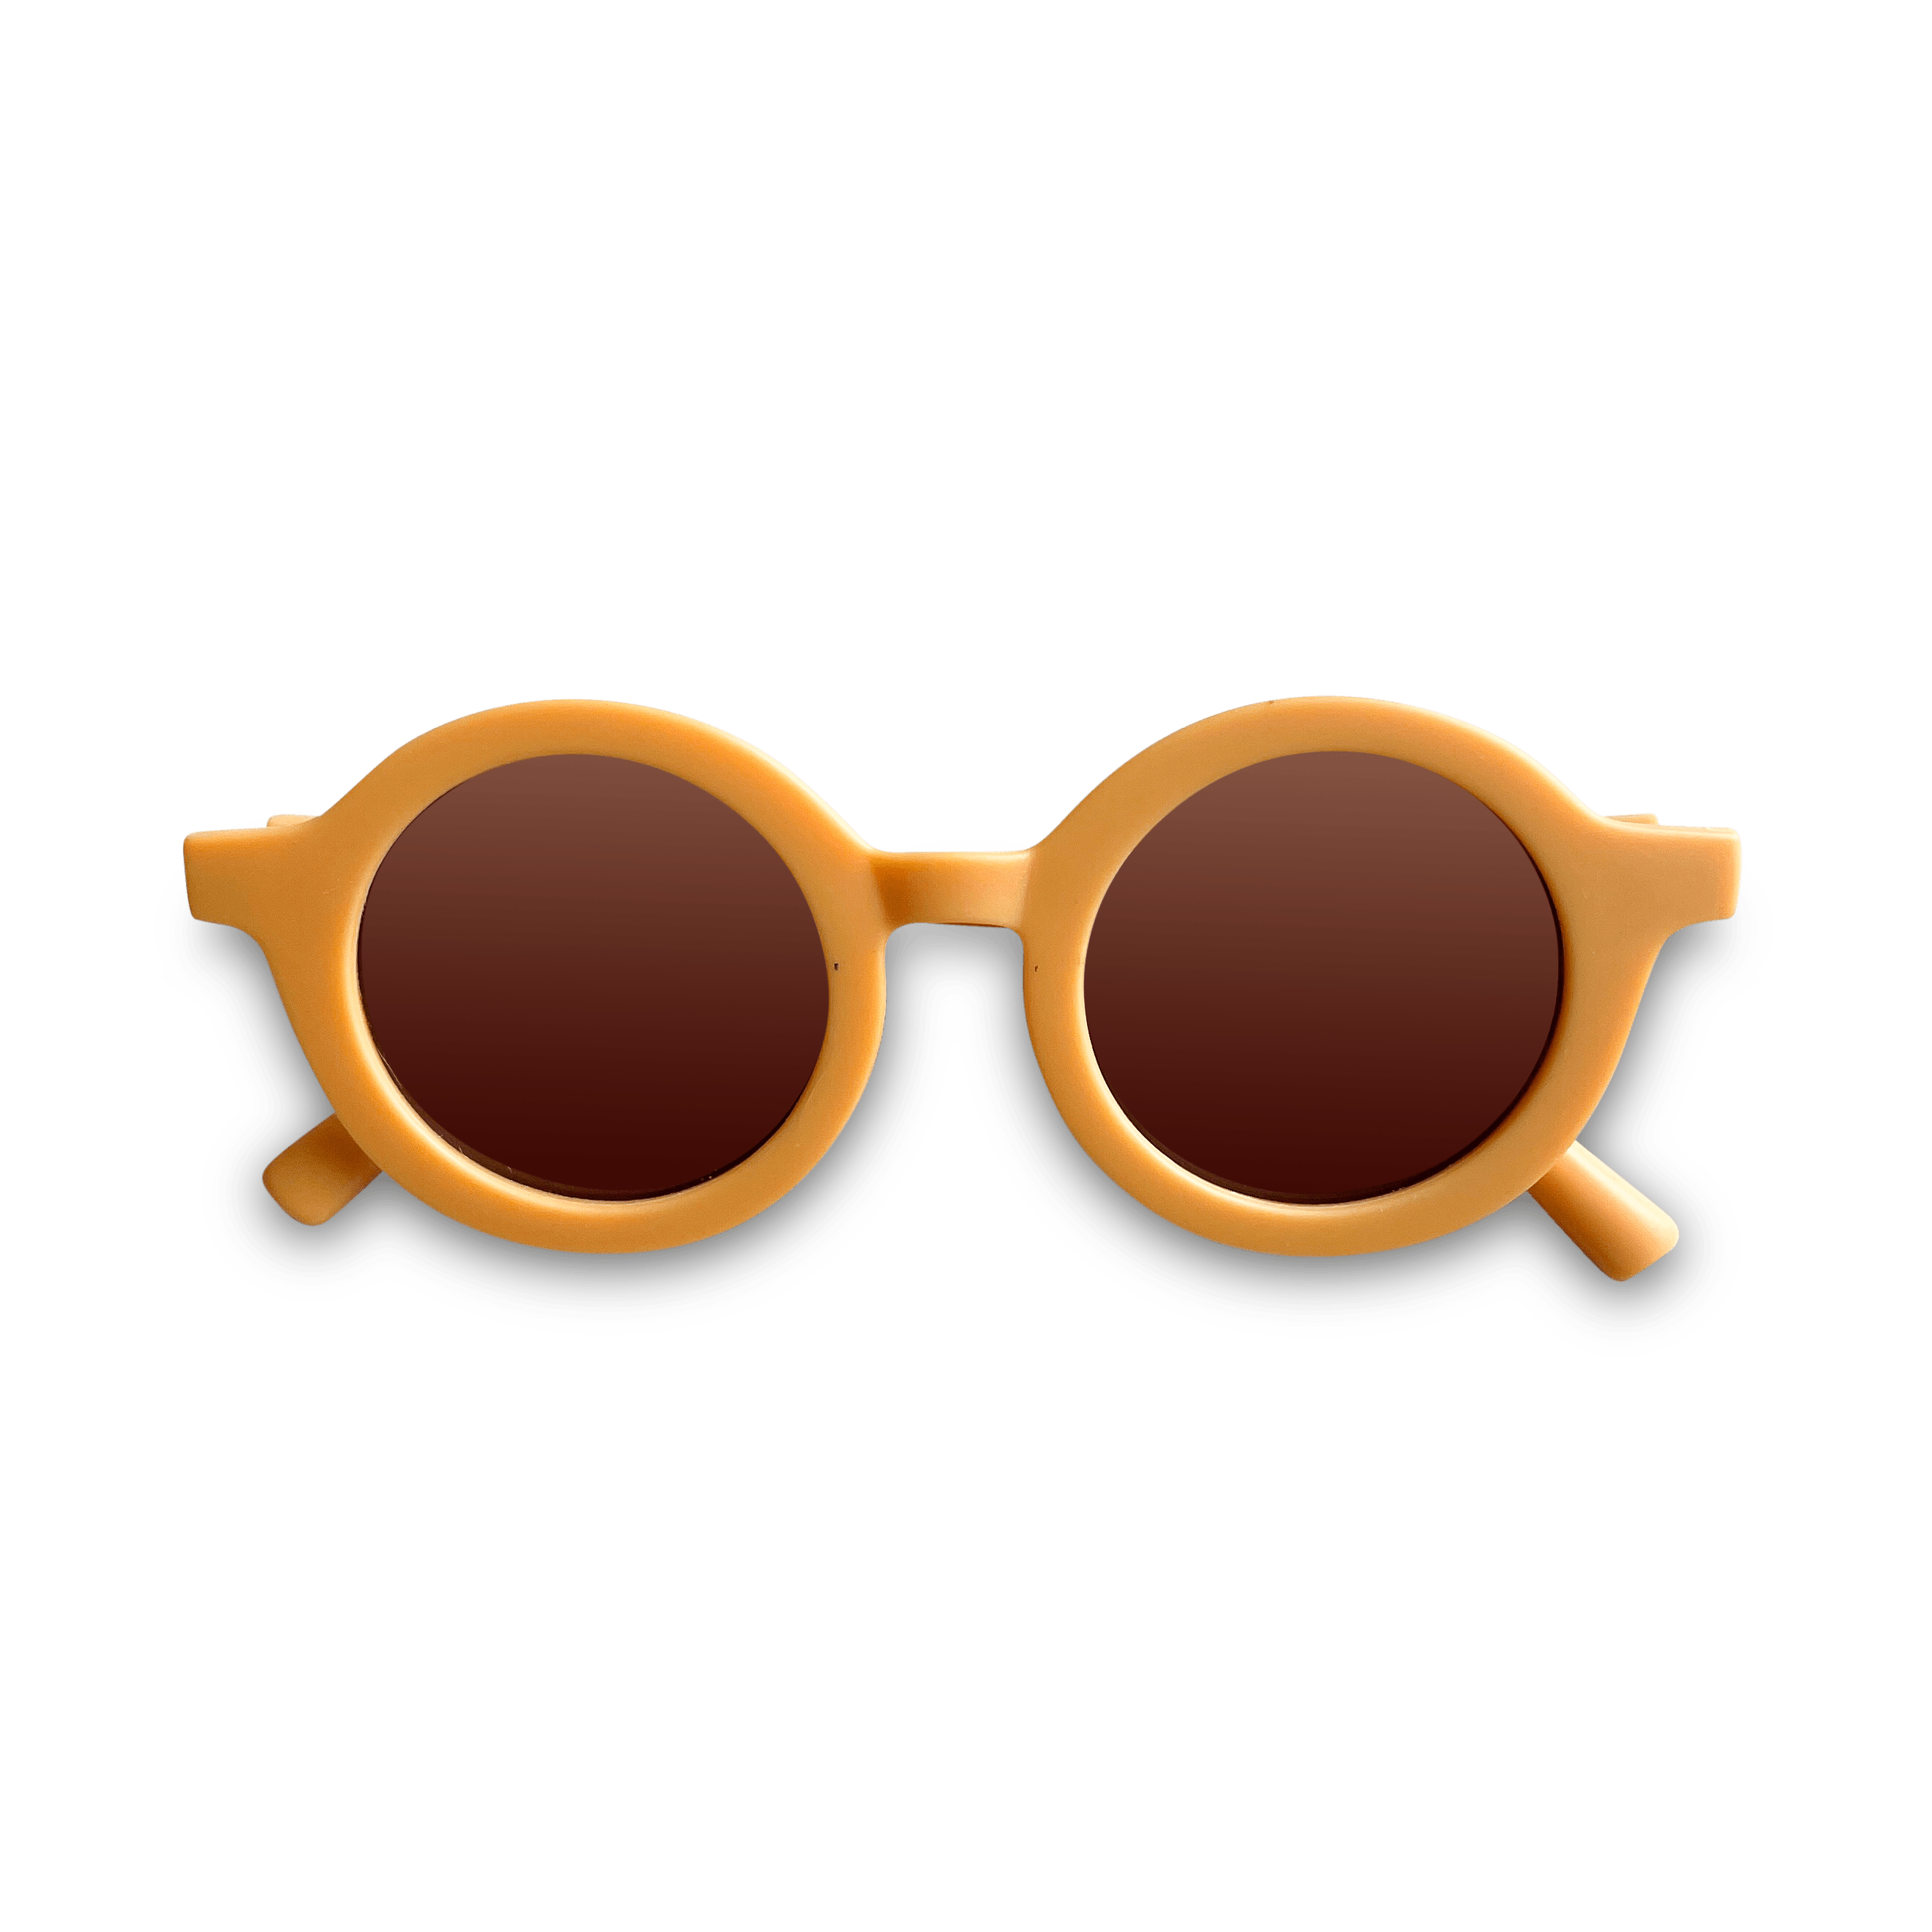 Sustainable UV400 Kids Sunglasses Mustard SUNGLASSES MKS MIMINOO 